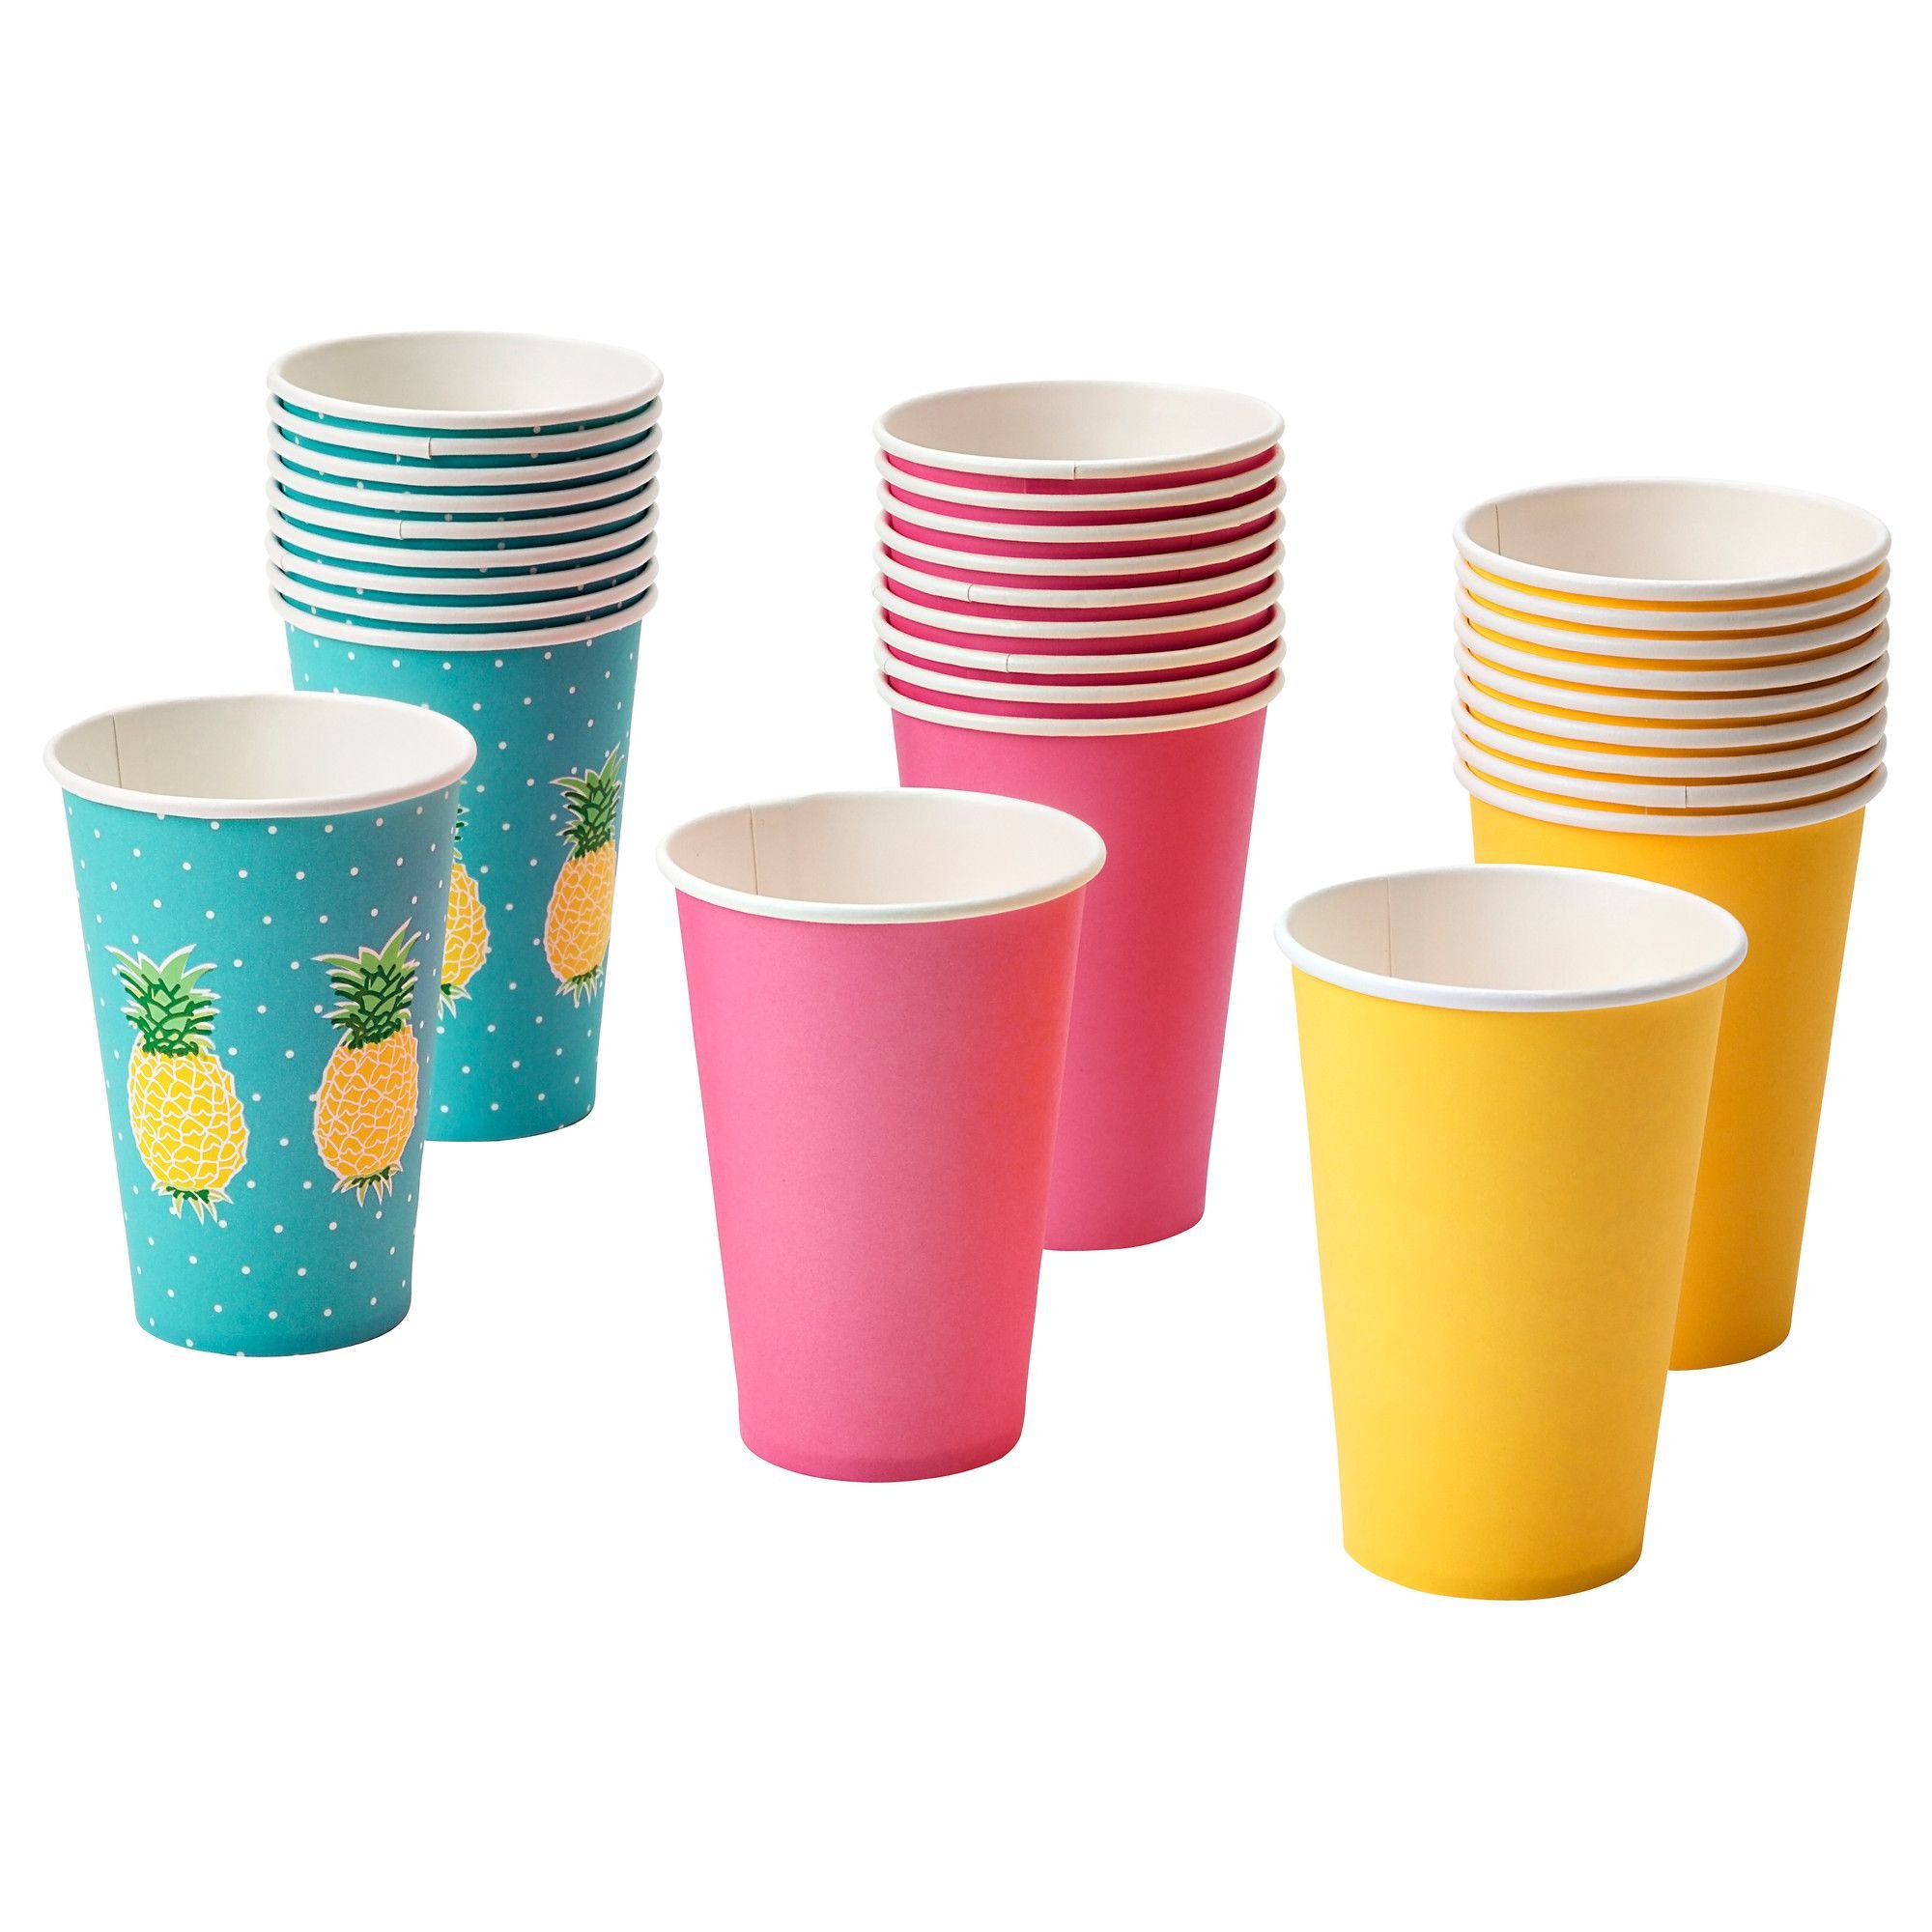 Бумажные стаканчики. Картонный стаканчик. Бумажные стаканчики цветные. Стакан картонный разноцветный. Одноразовая посуда стаканы.